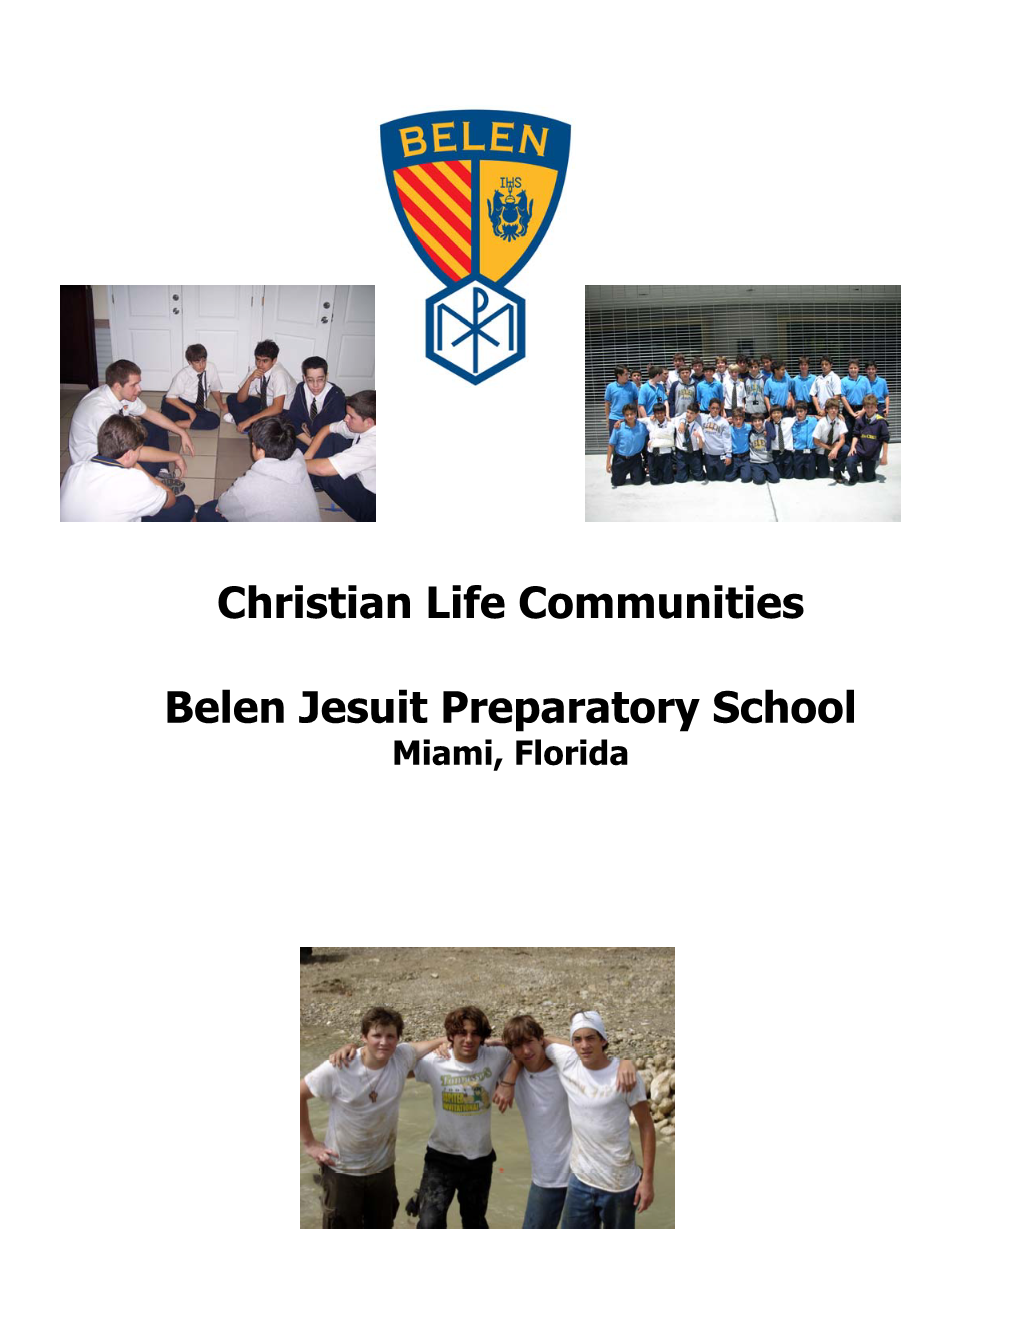 Christian Life Communities Belen Jesuit Preparatory School